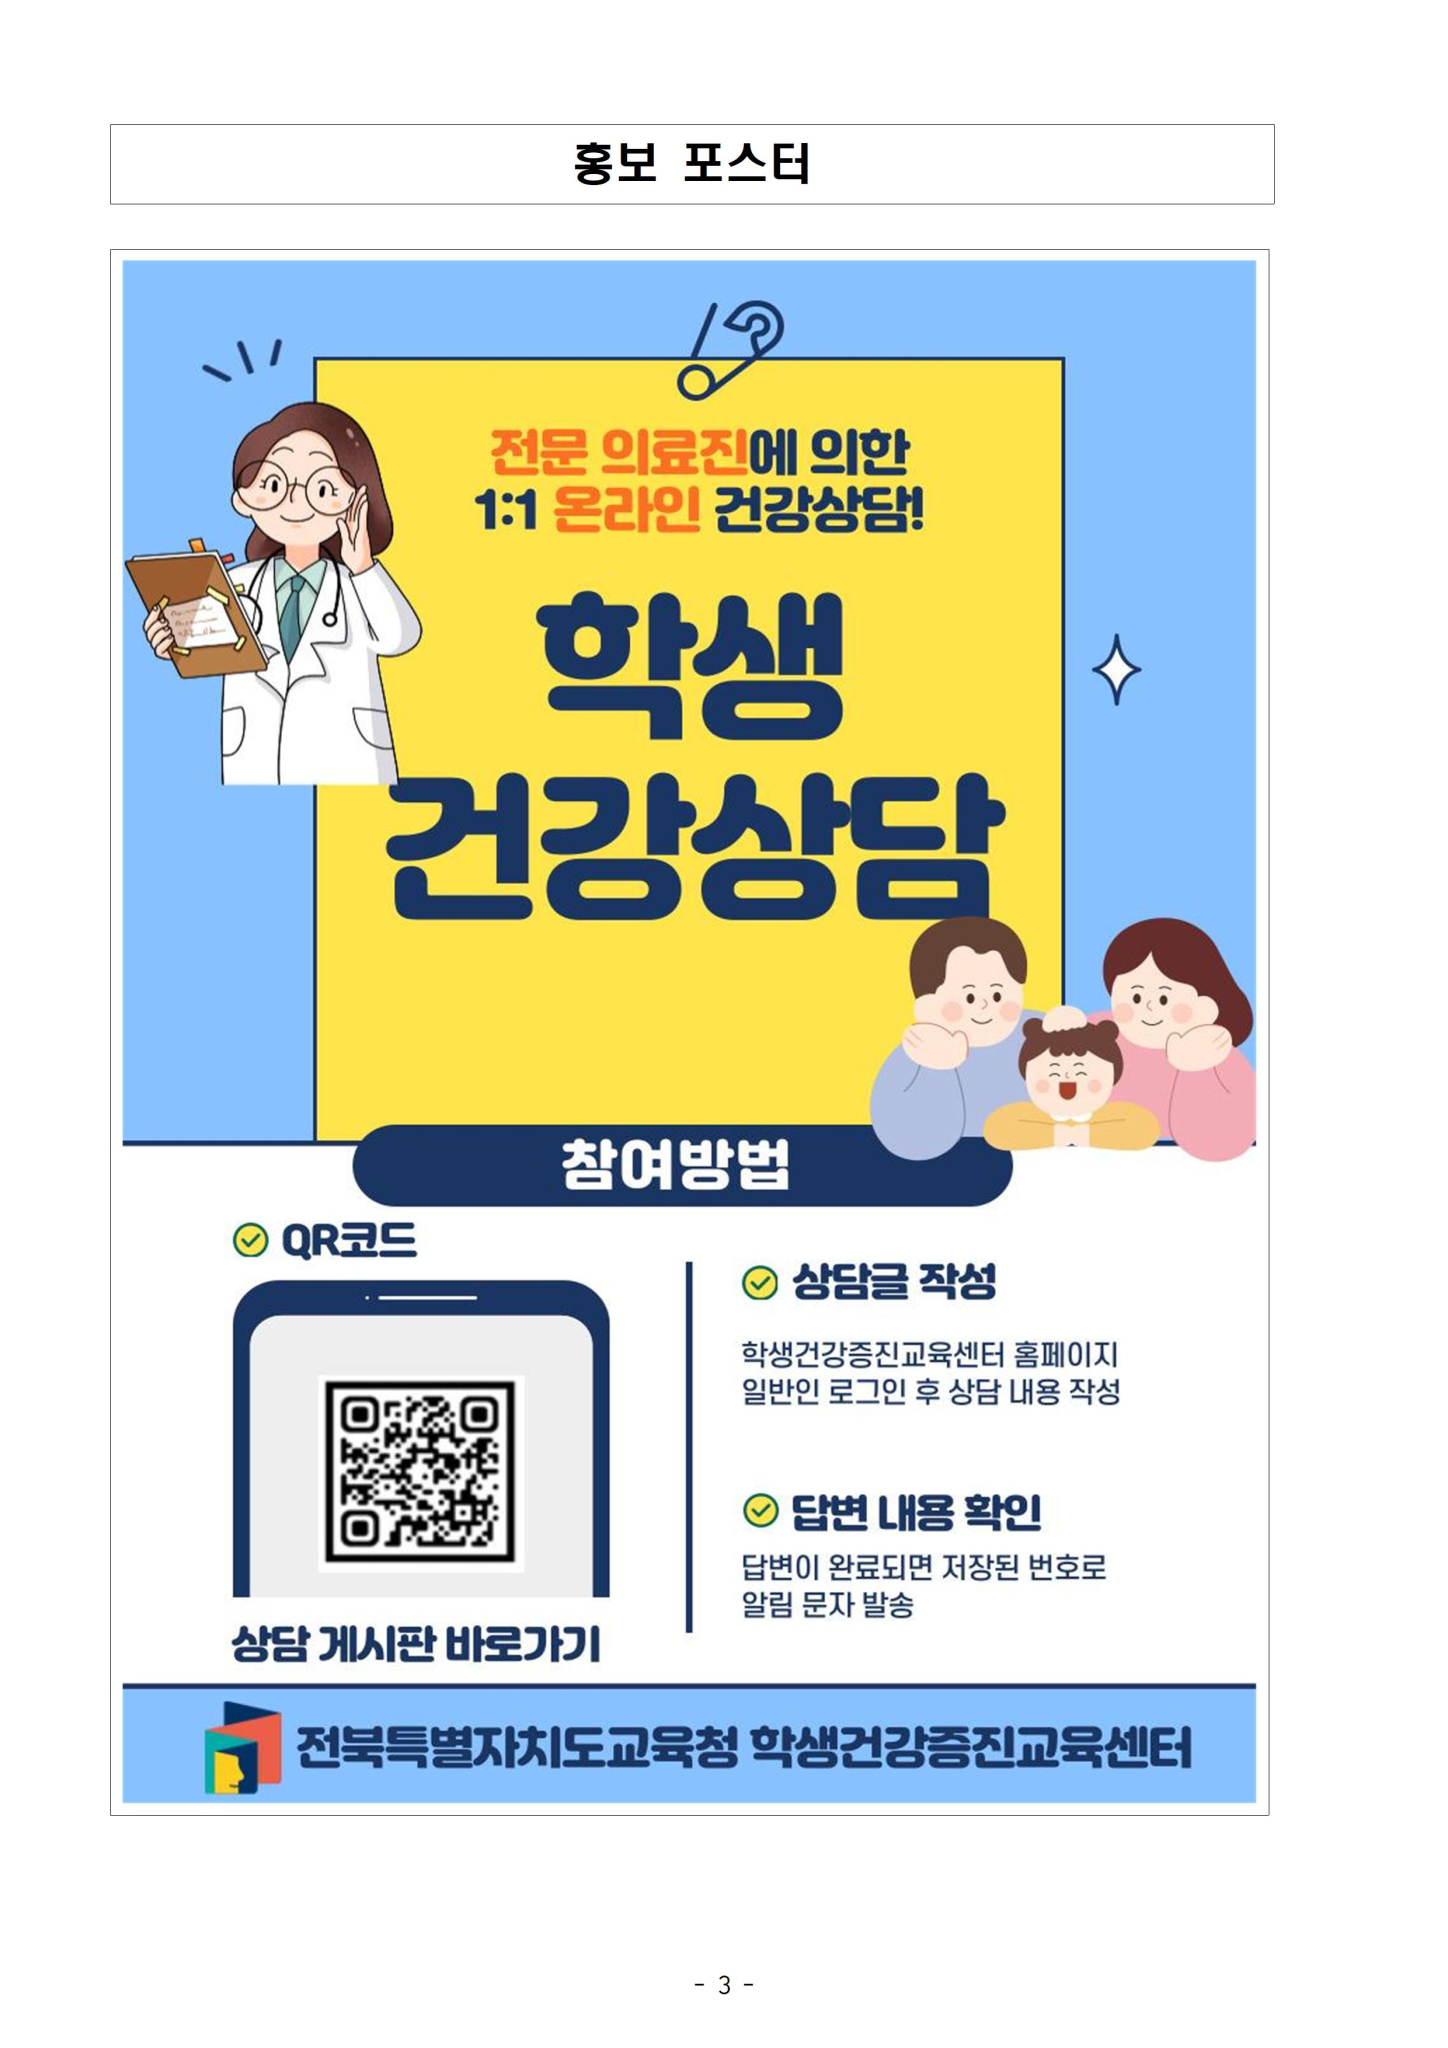 학생건강증진교육센터 온라인 학생건강상담 게시판 활용 안내장003